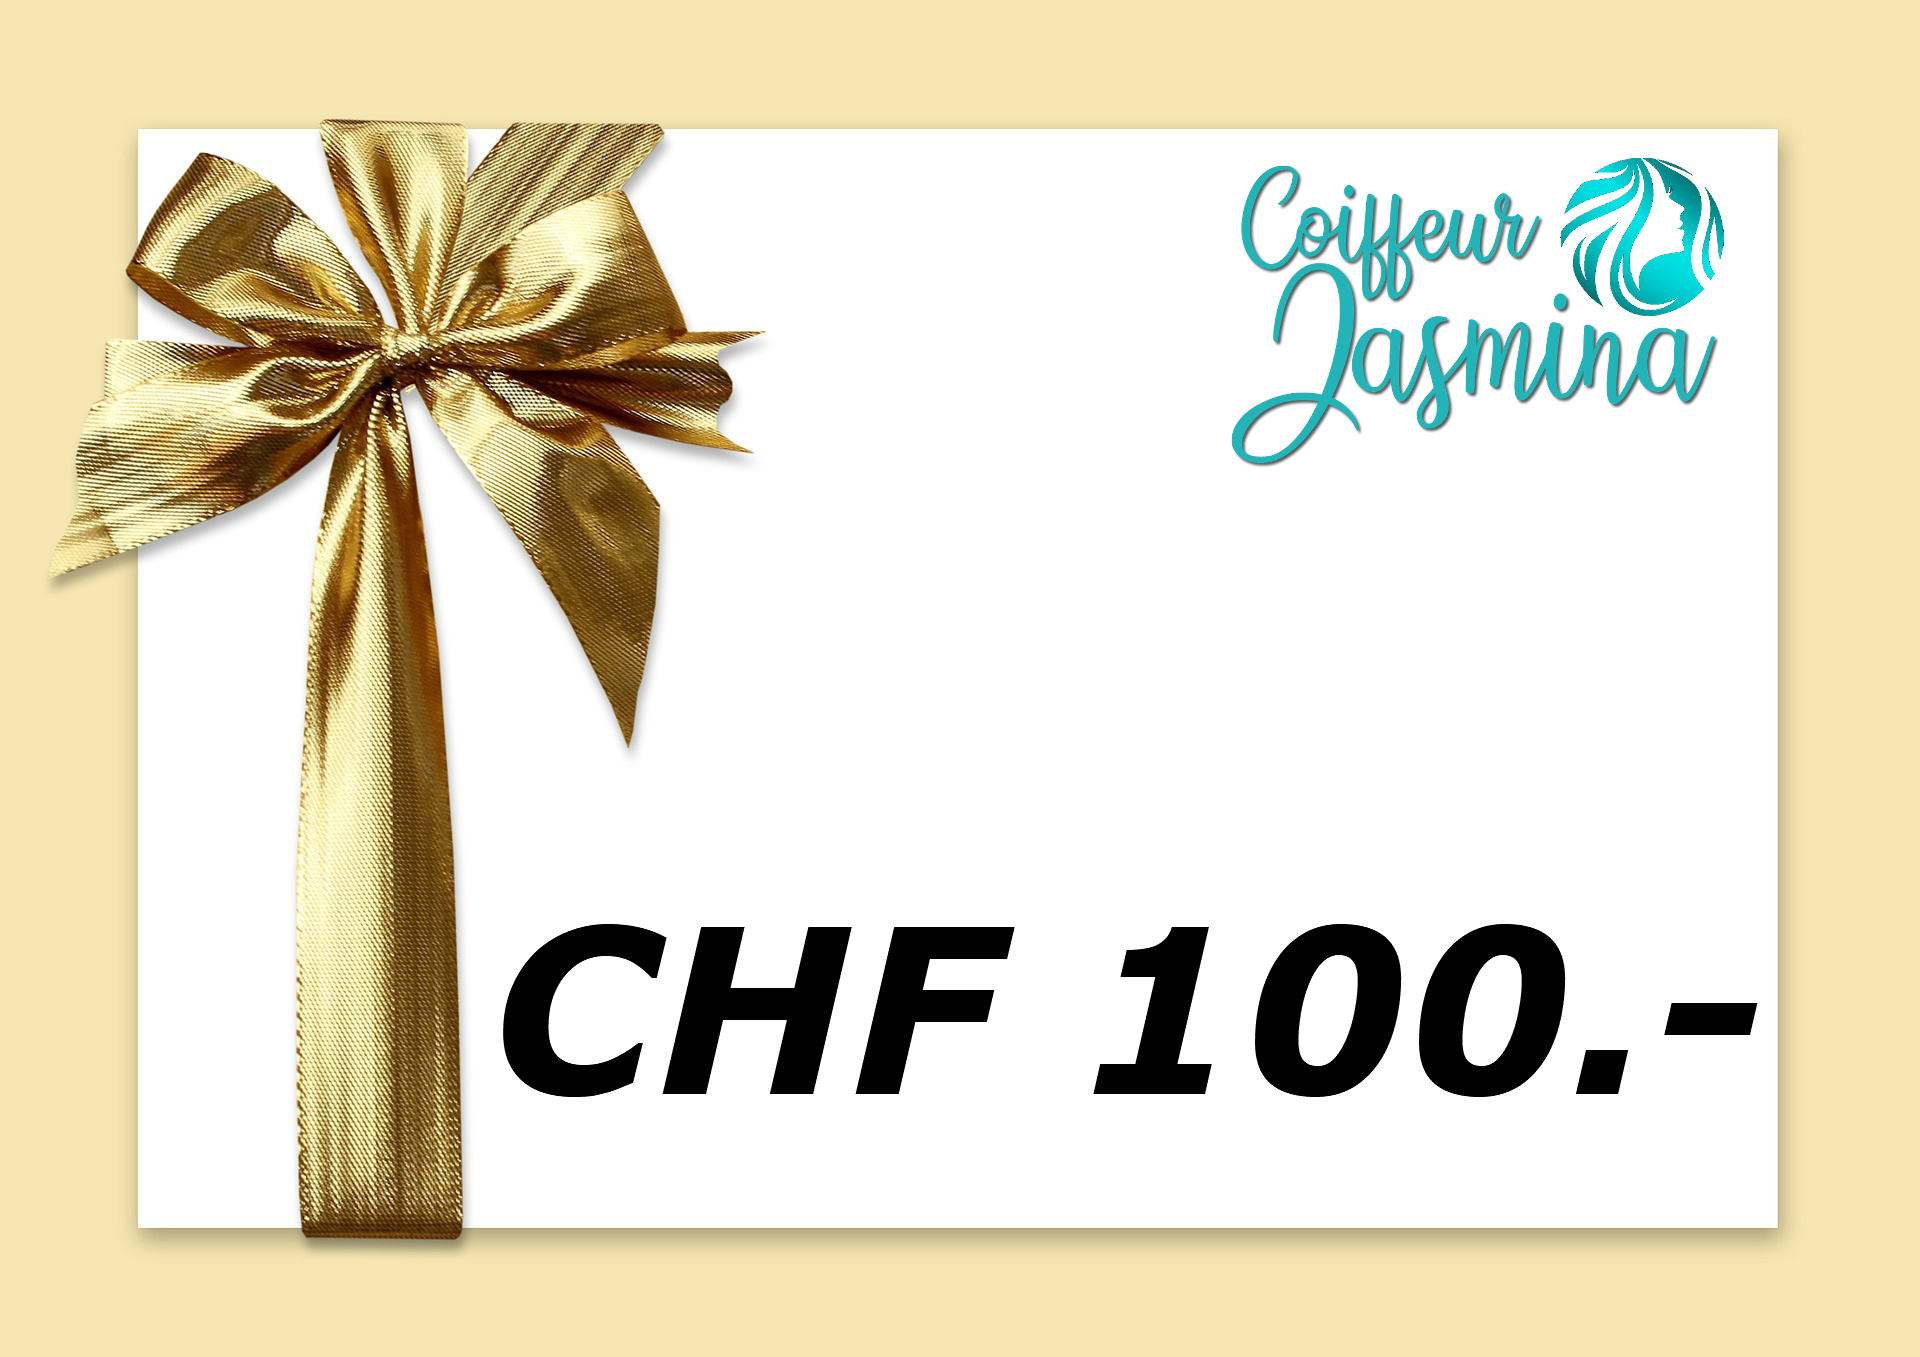 Gutschein CHF 100